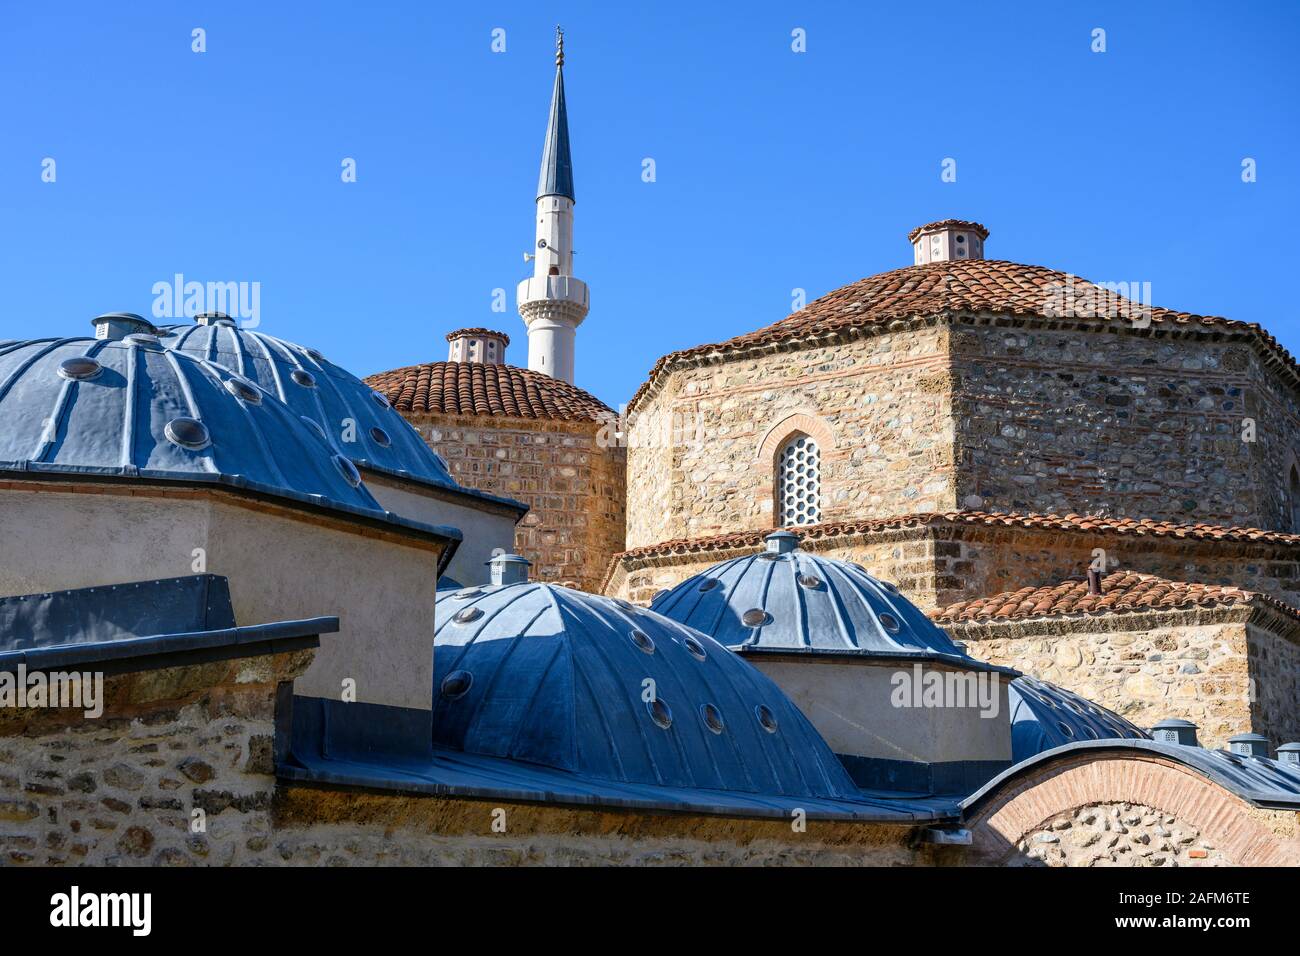 Le Hammam de Gazi Mehmet Pacha, construit au 16e siècle. avec le minaret de la mosquée Emin Pacha en arrière-plan. À Prizren, Kosovo, Bal centrale Banque D'Images